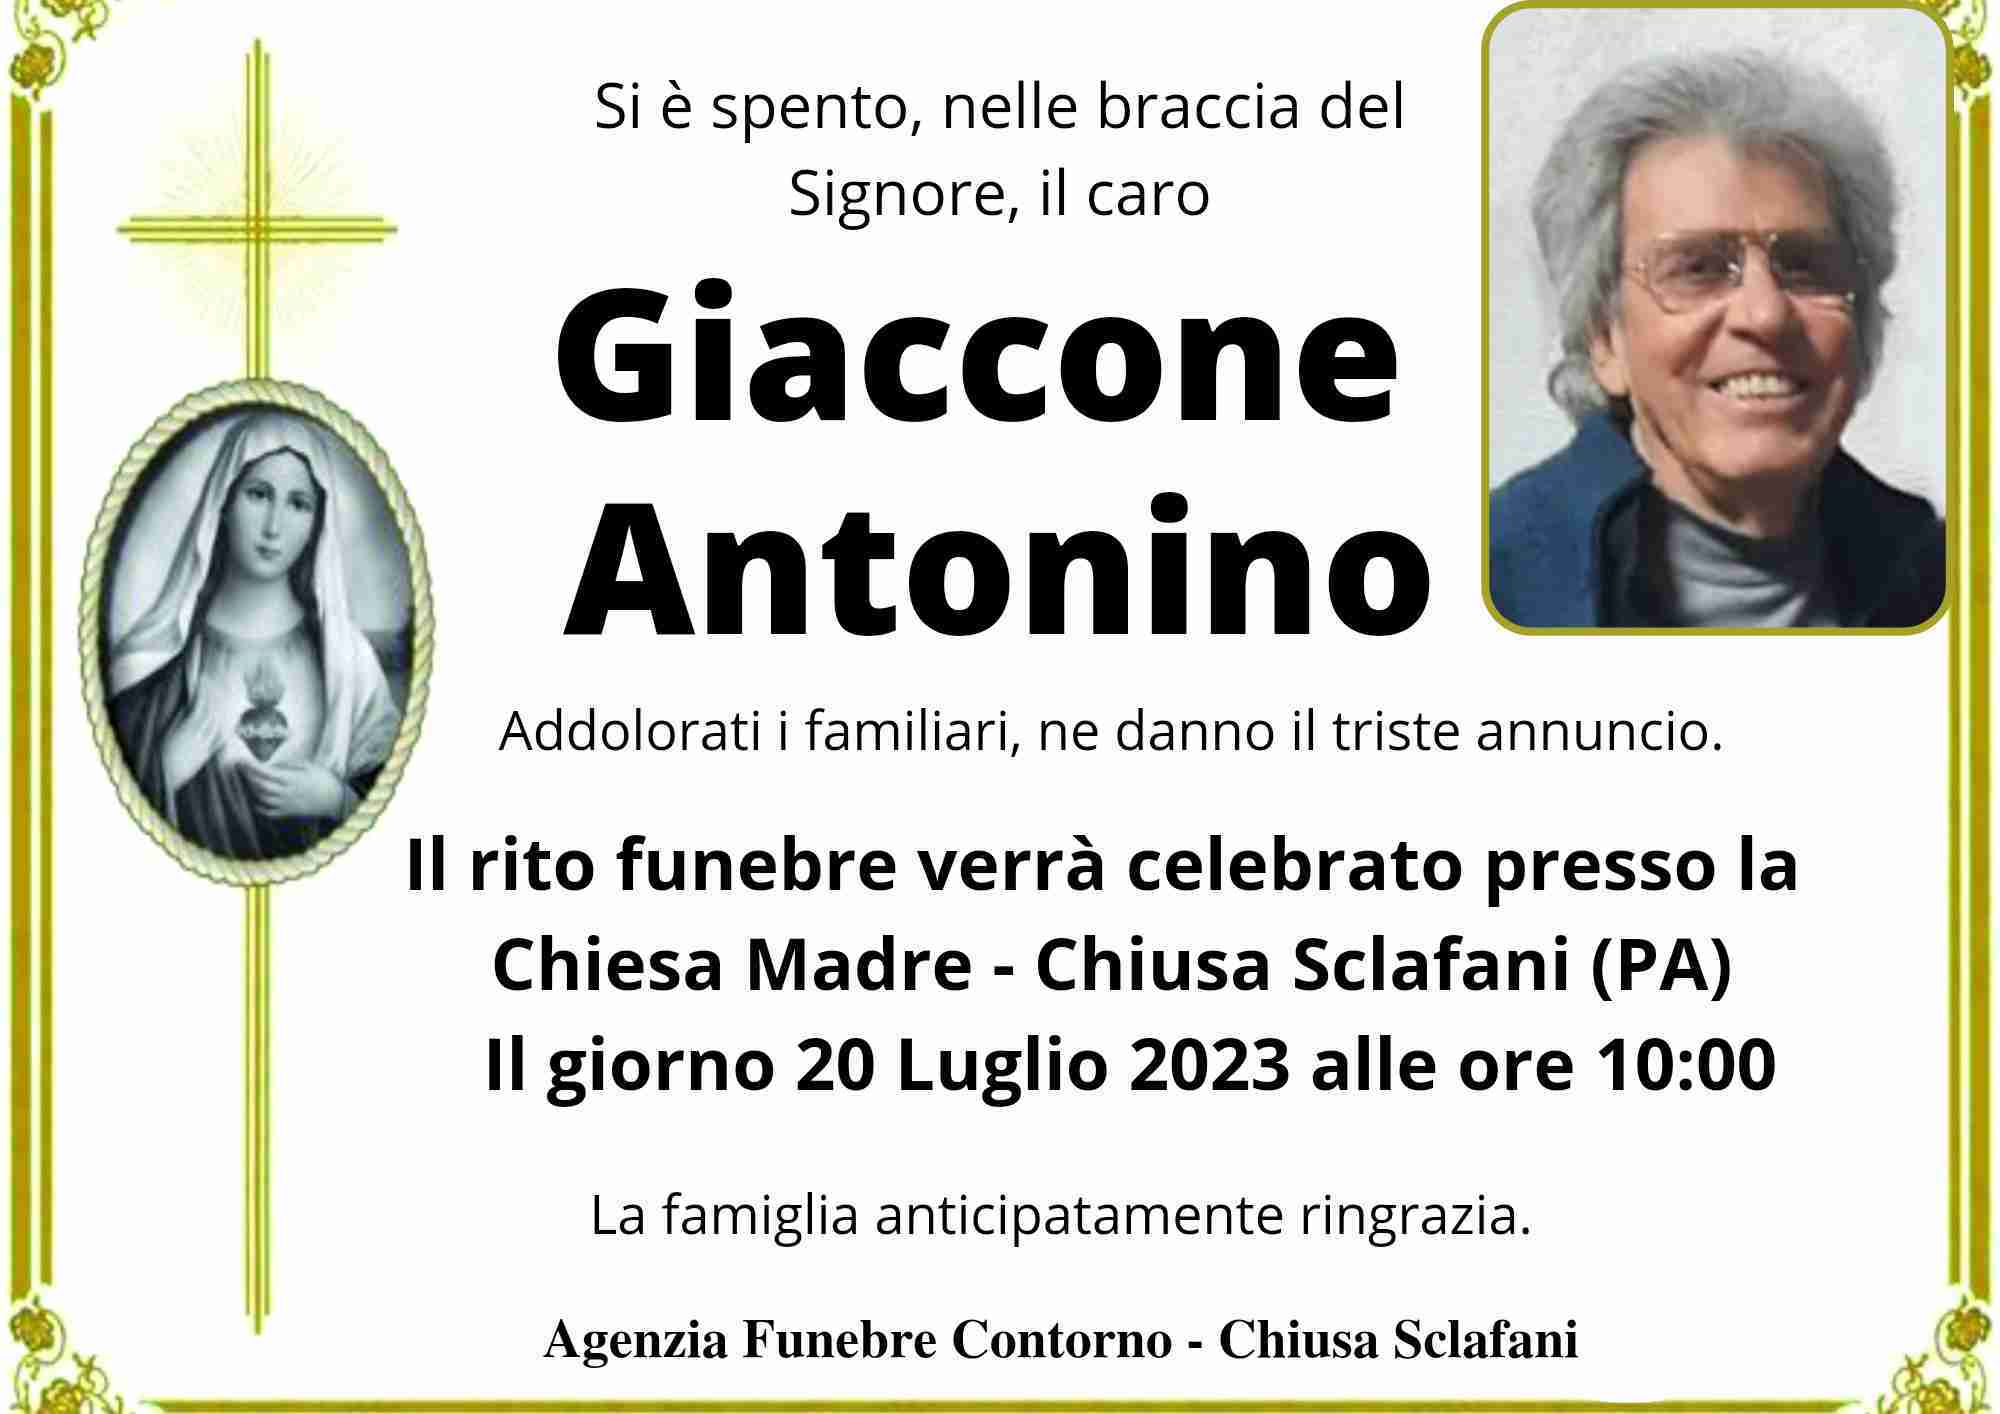 Antonino Giaccone